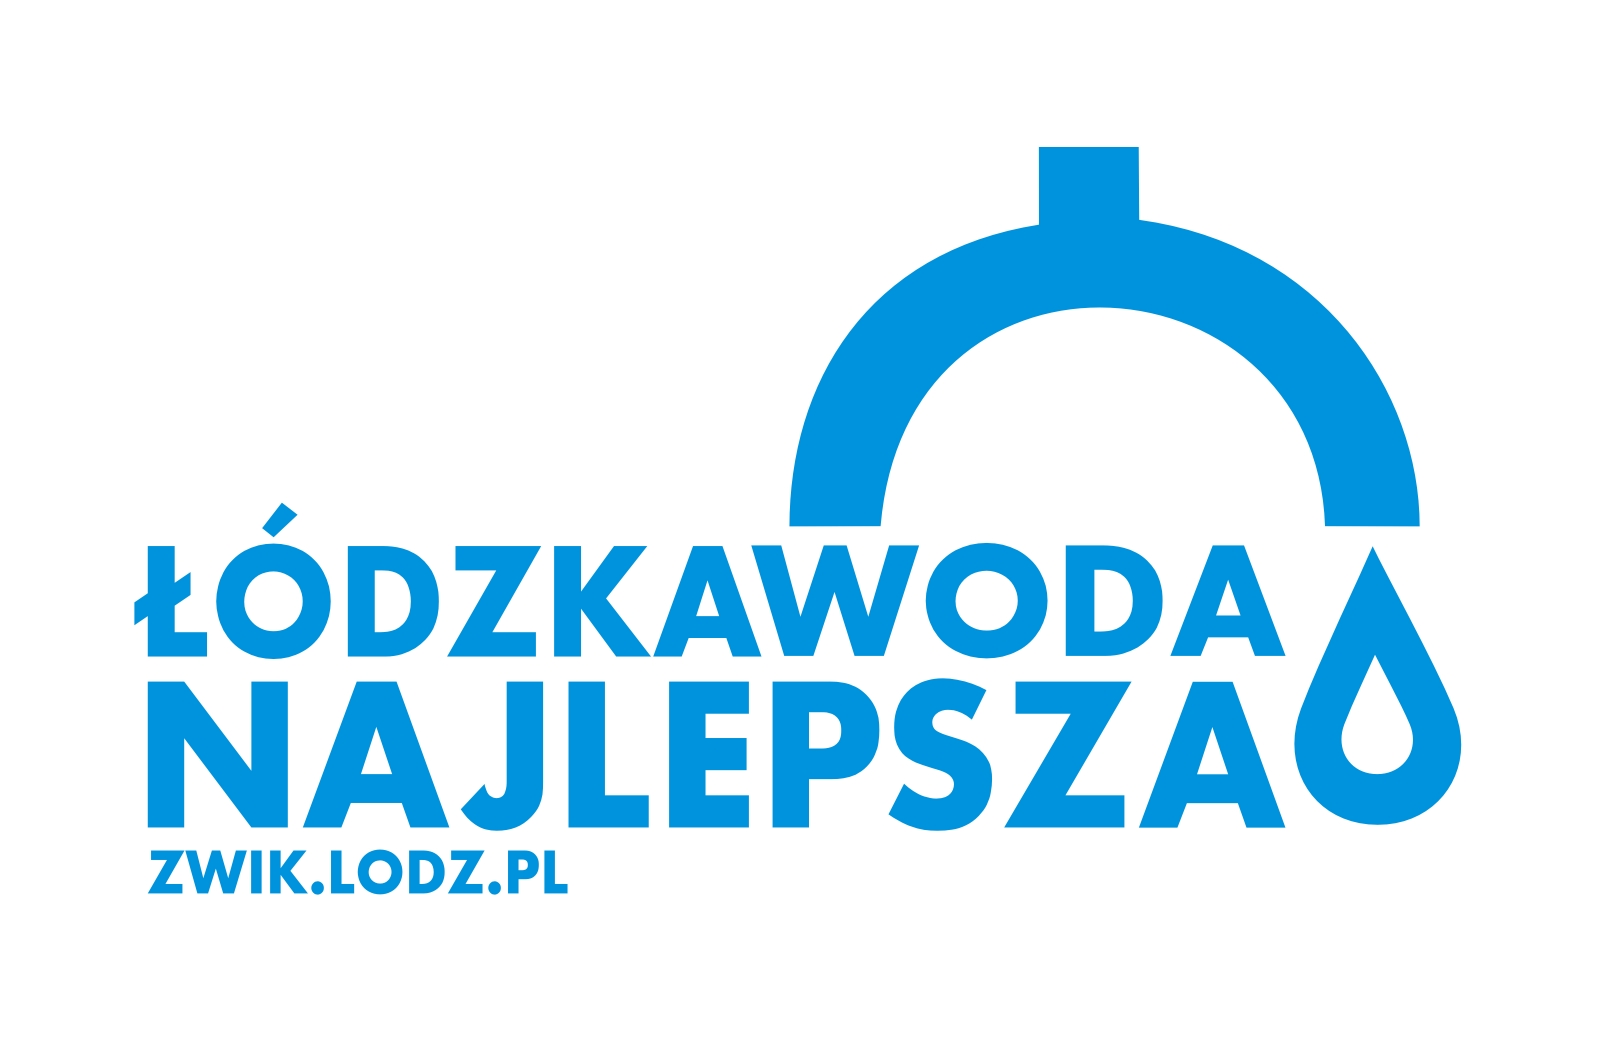 Logo Łódzka Woda Najlepsza - format JPG (227 KB)